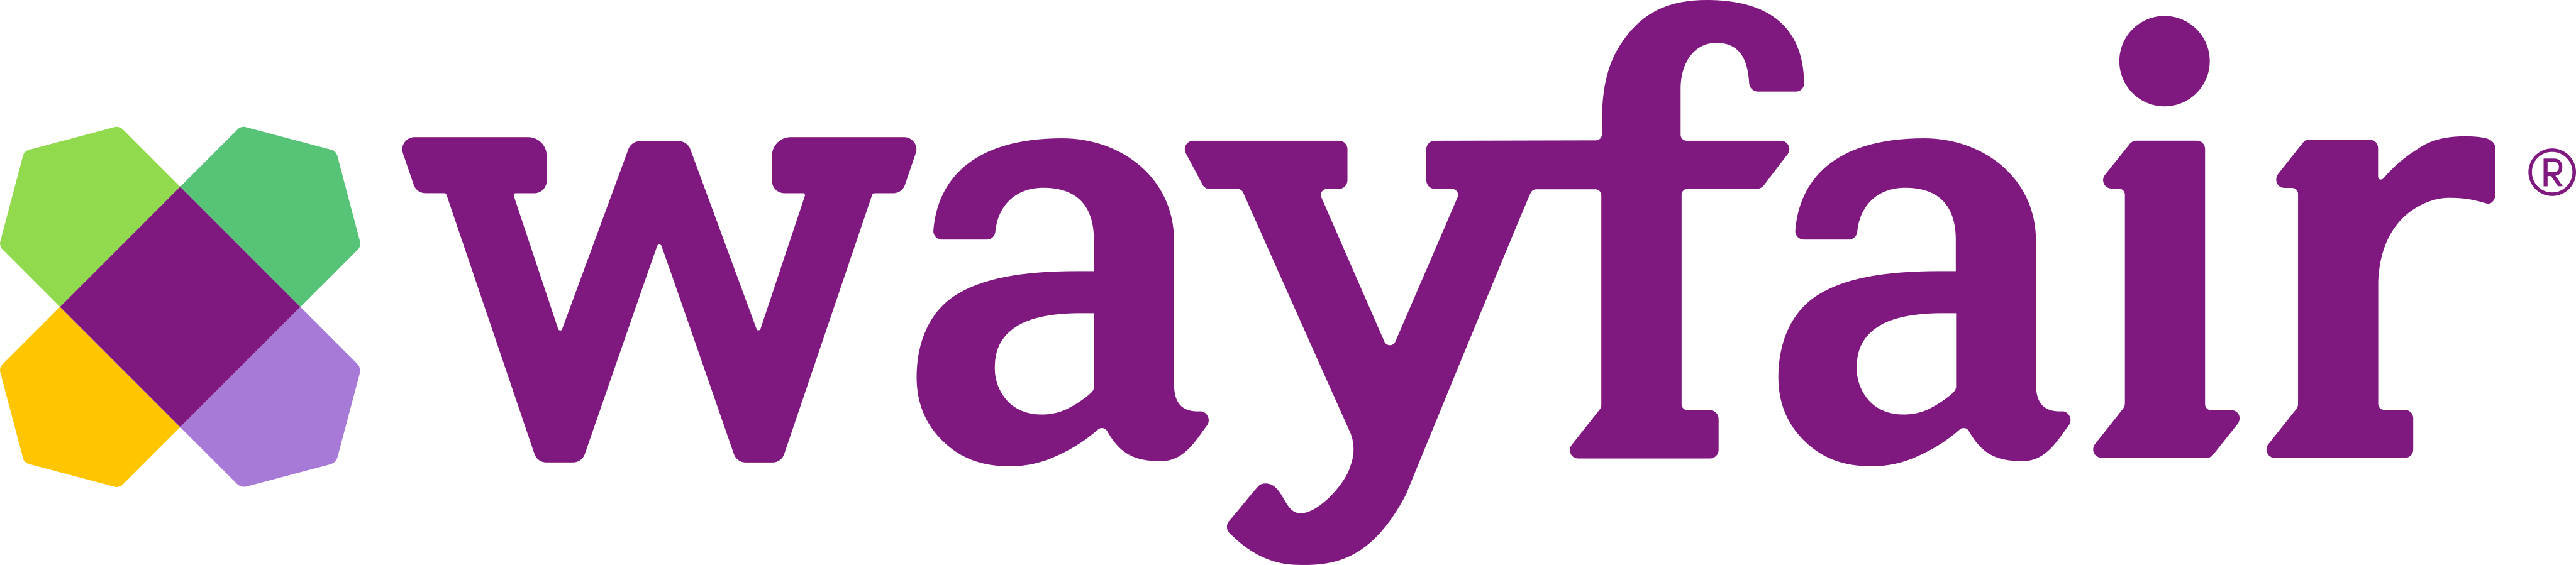 Wayfair Logo.